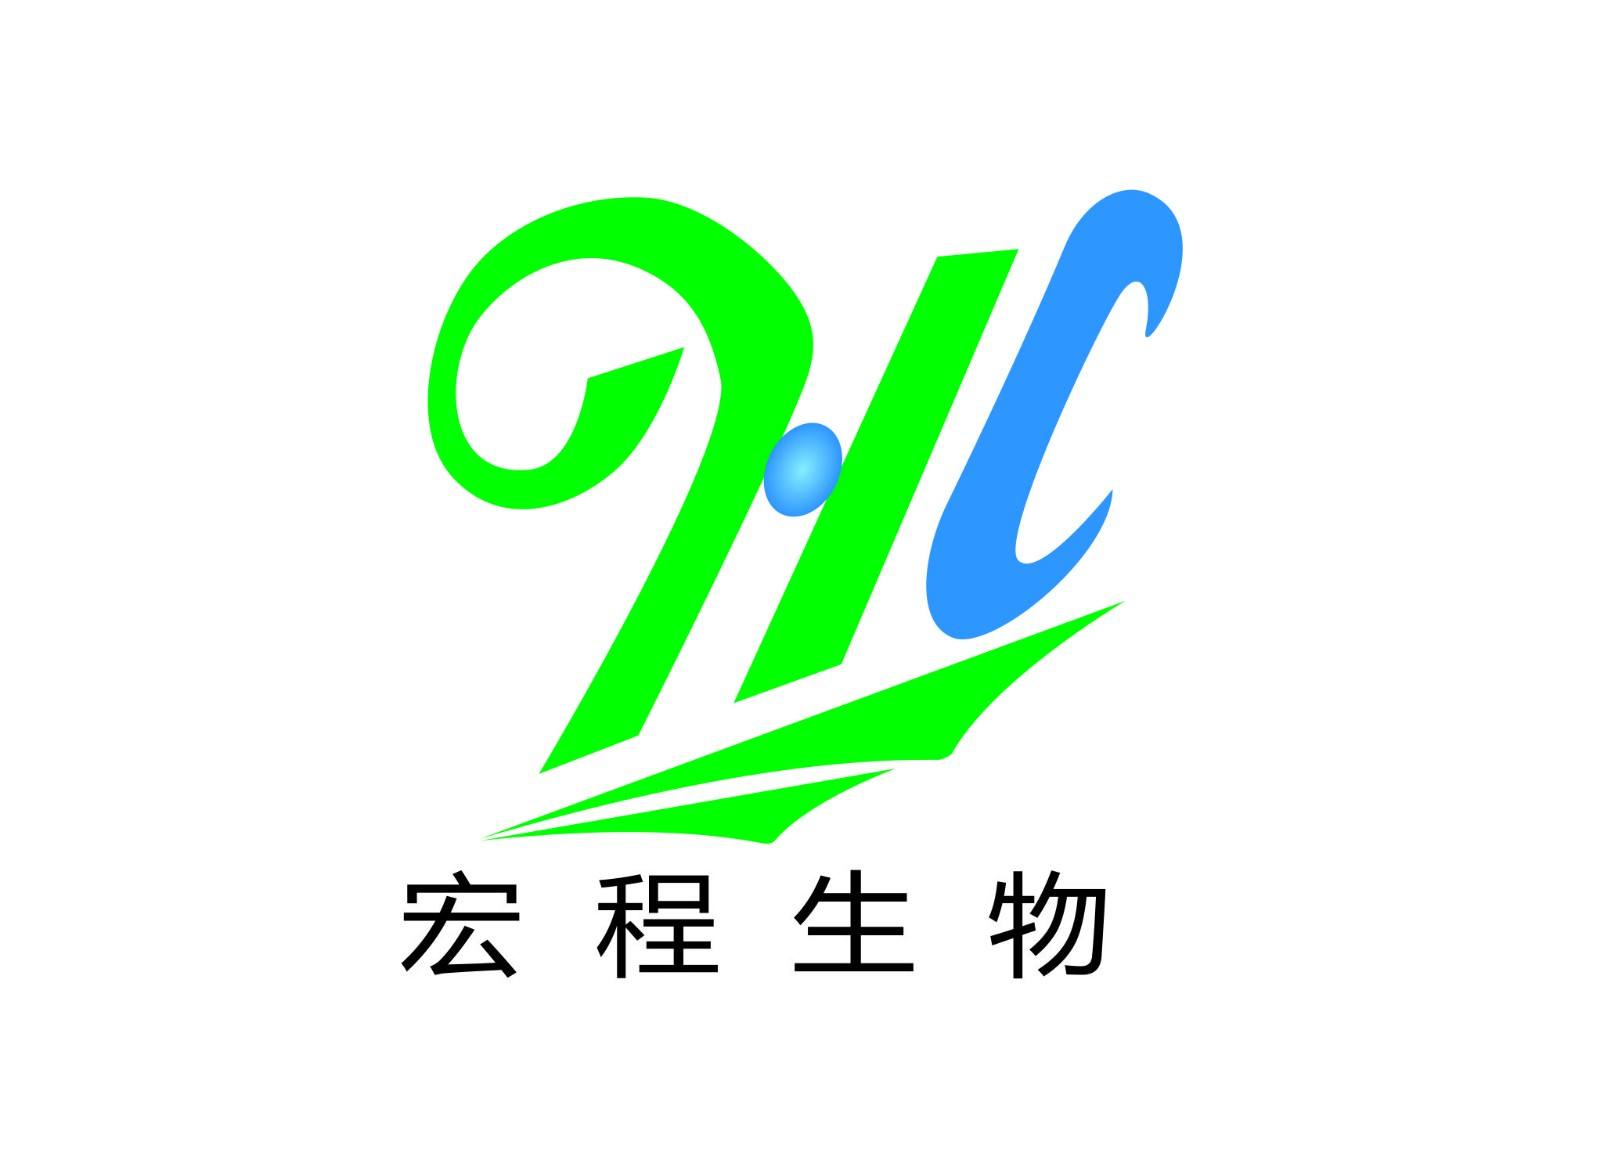 广州宏程生物科技有限公司